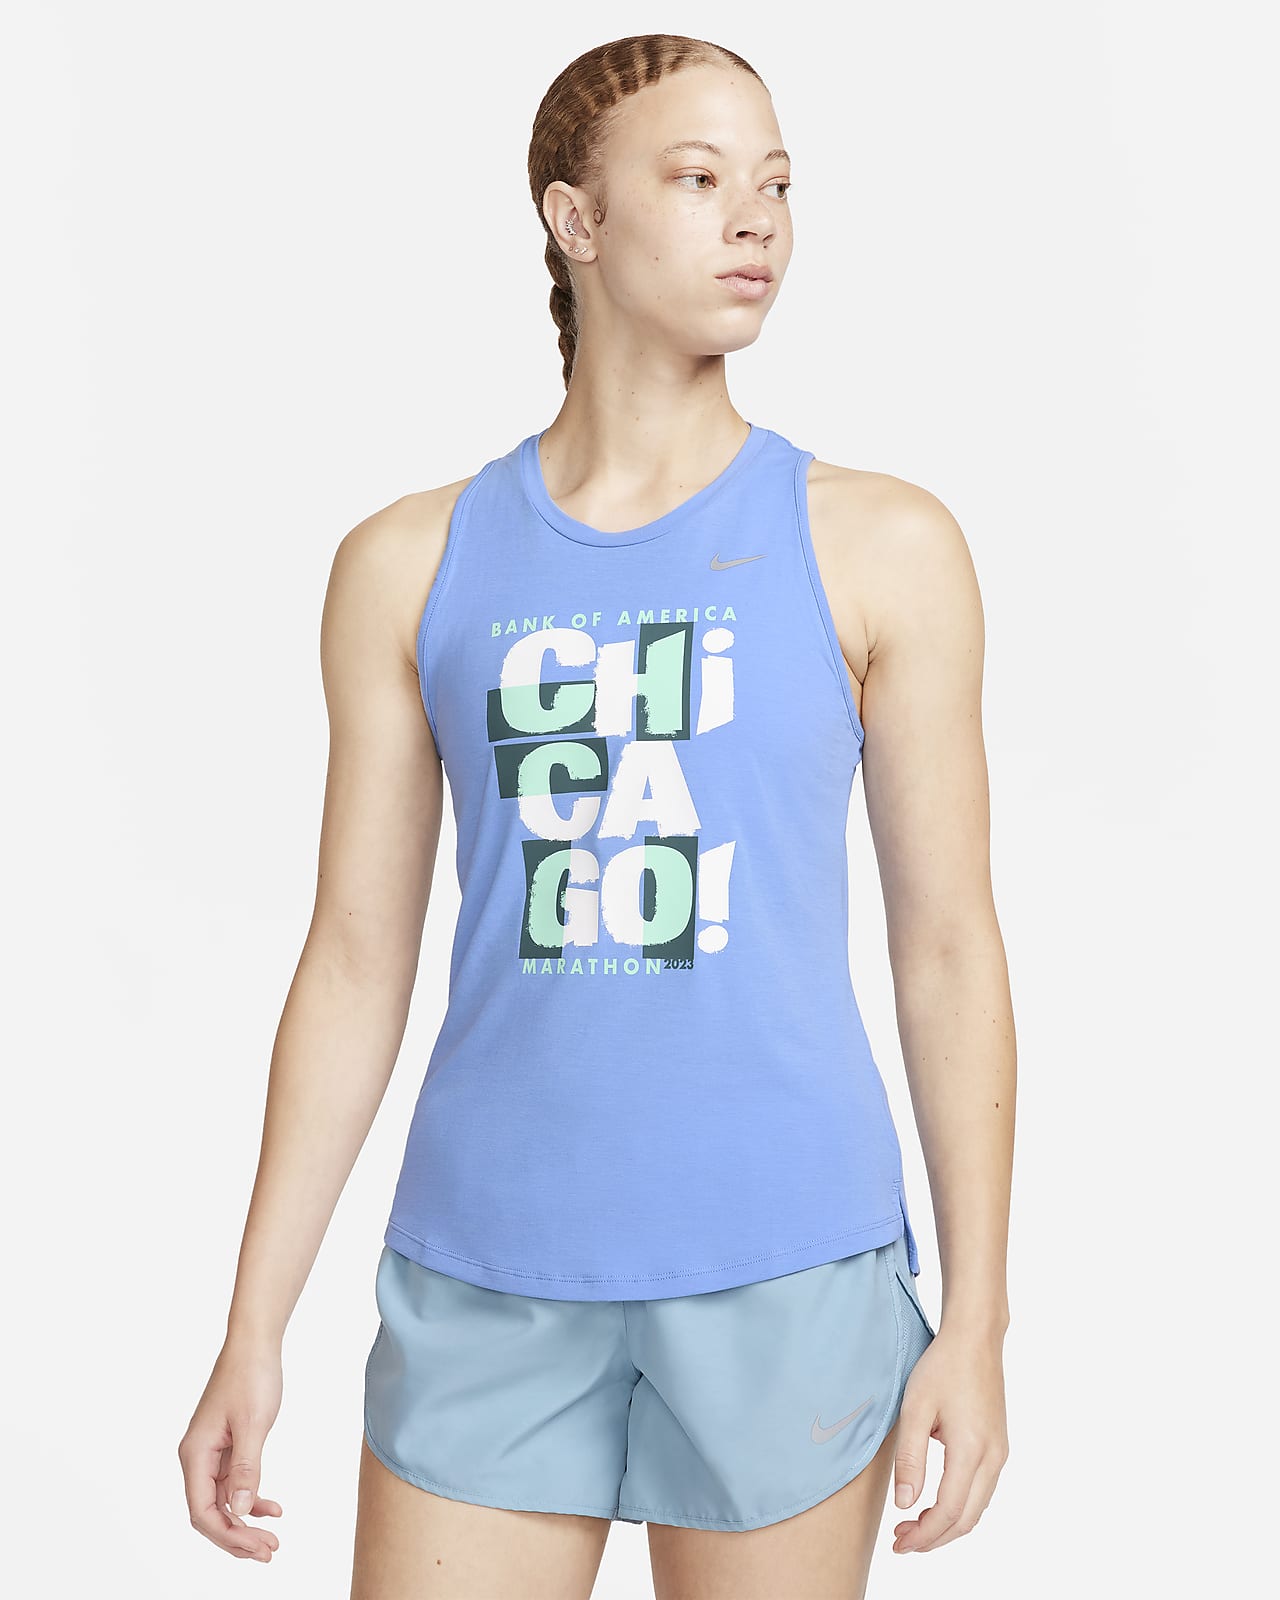 Nike Dri-FIT One Luxe Women's Slim Fit Tank.